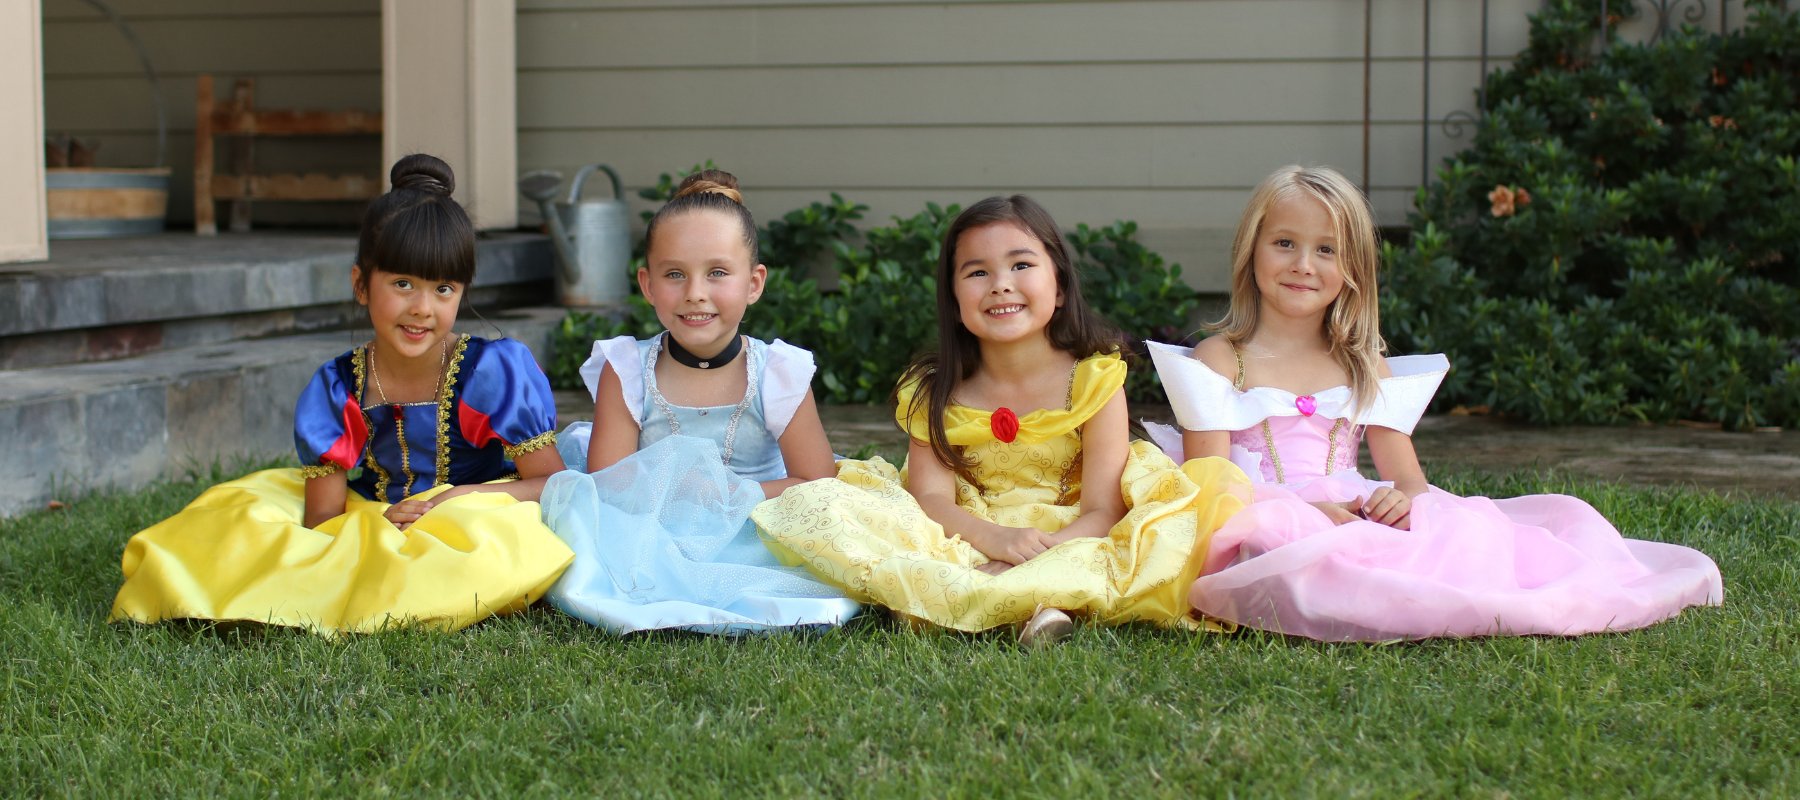 disney princess dresses for kids